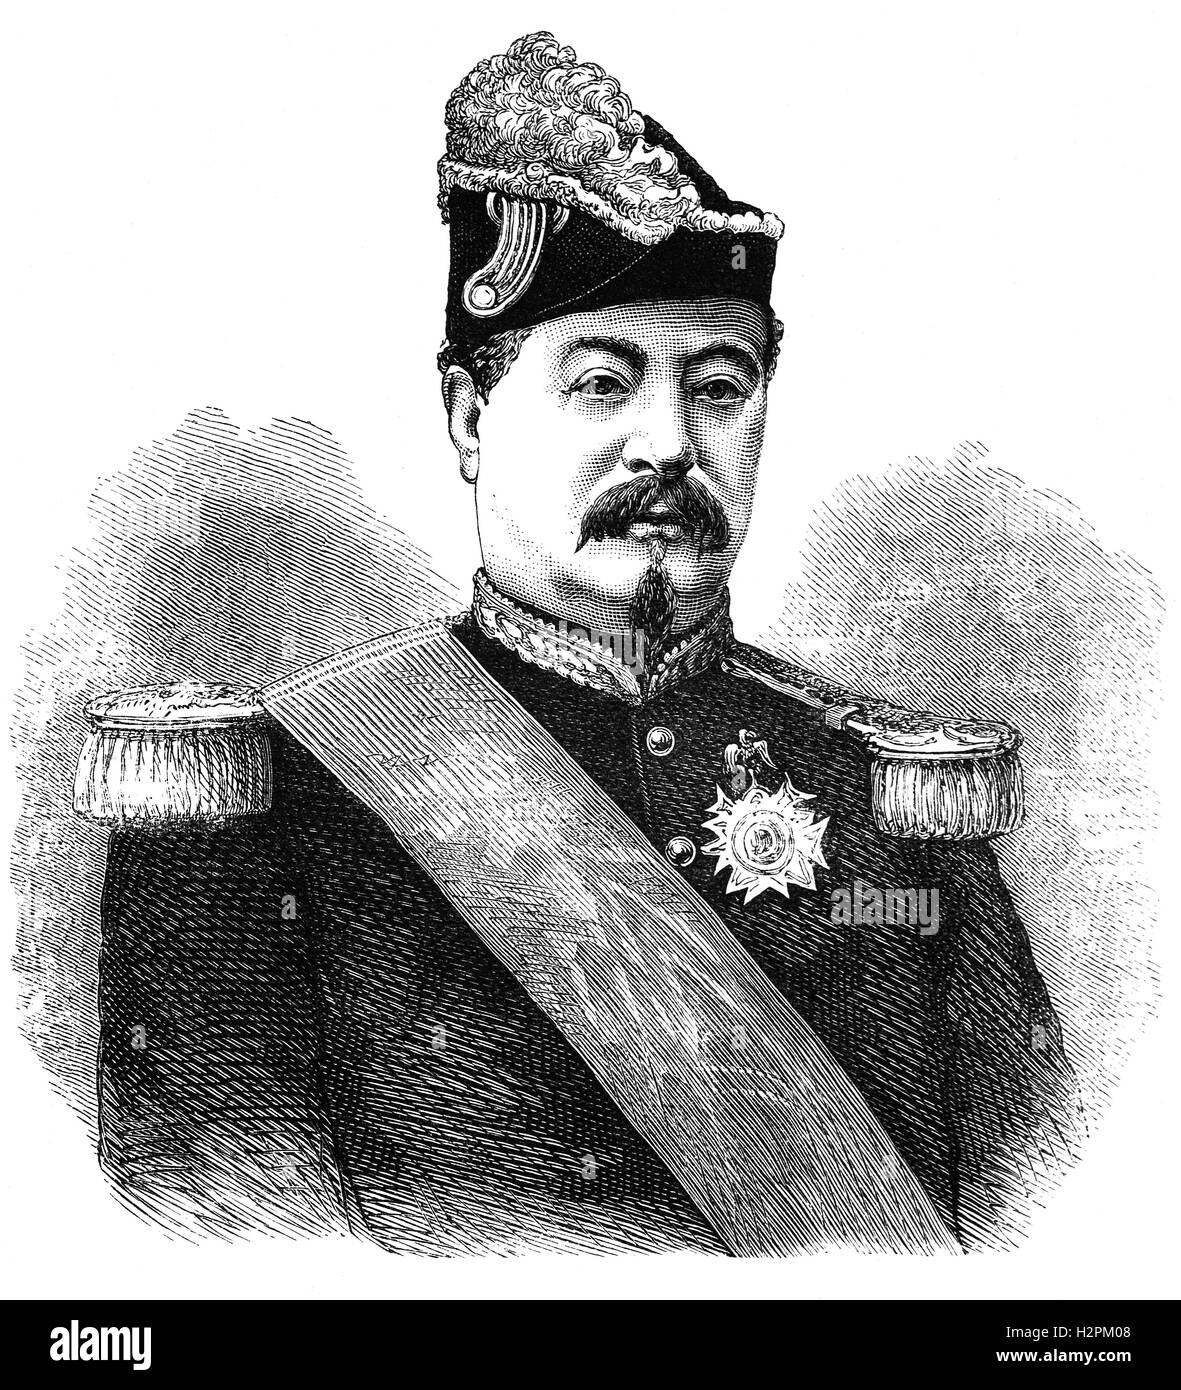 François-Achille Bazaine (1811 – 1888) war ein französischer general und von 1864, ein Marschall von Frankreich, wer die letzte organisierte französische Armee, die Preußen während des französisch-preußischen Krieges aufgegeben. Stockfoto